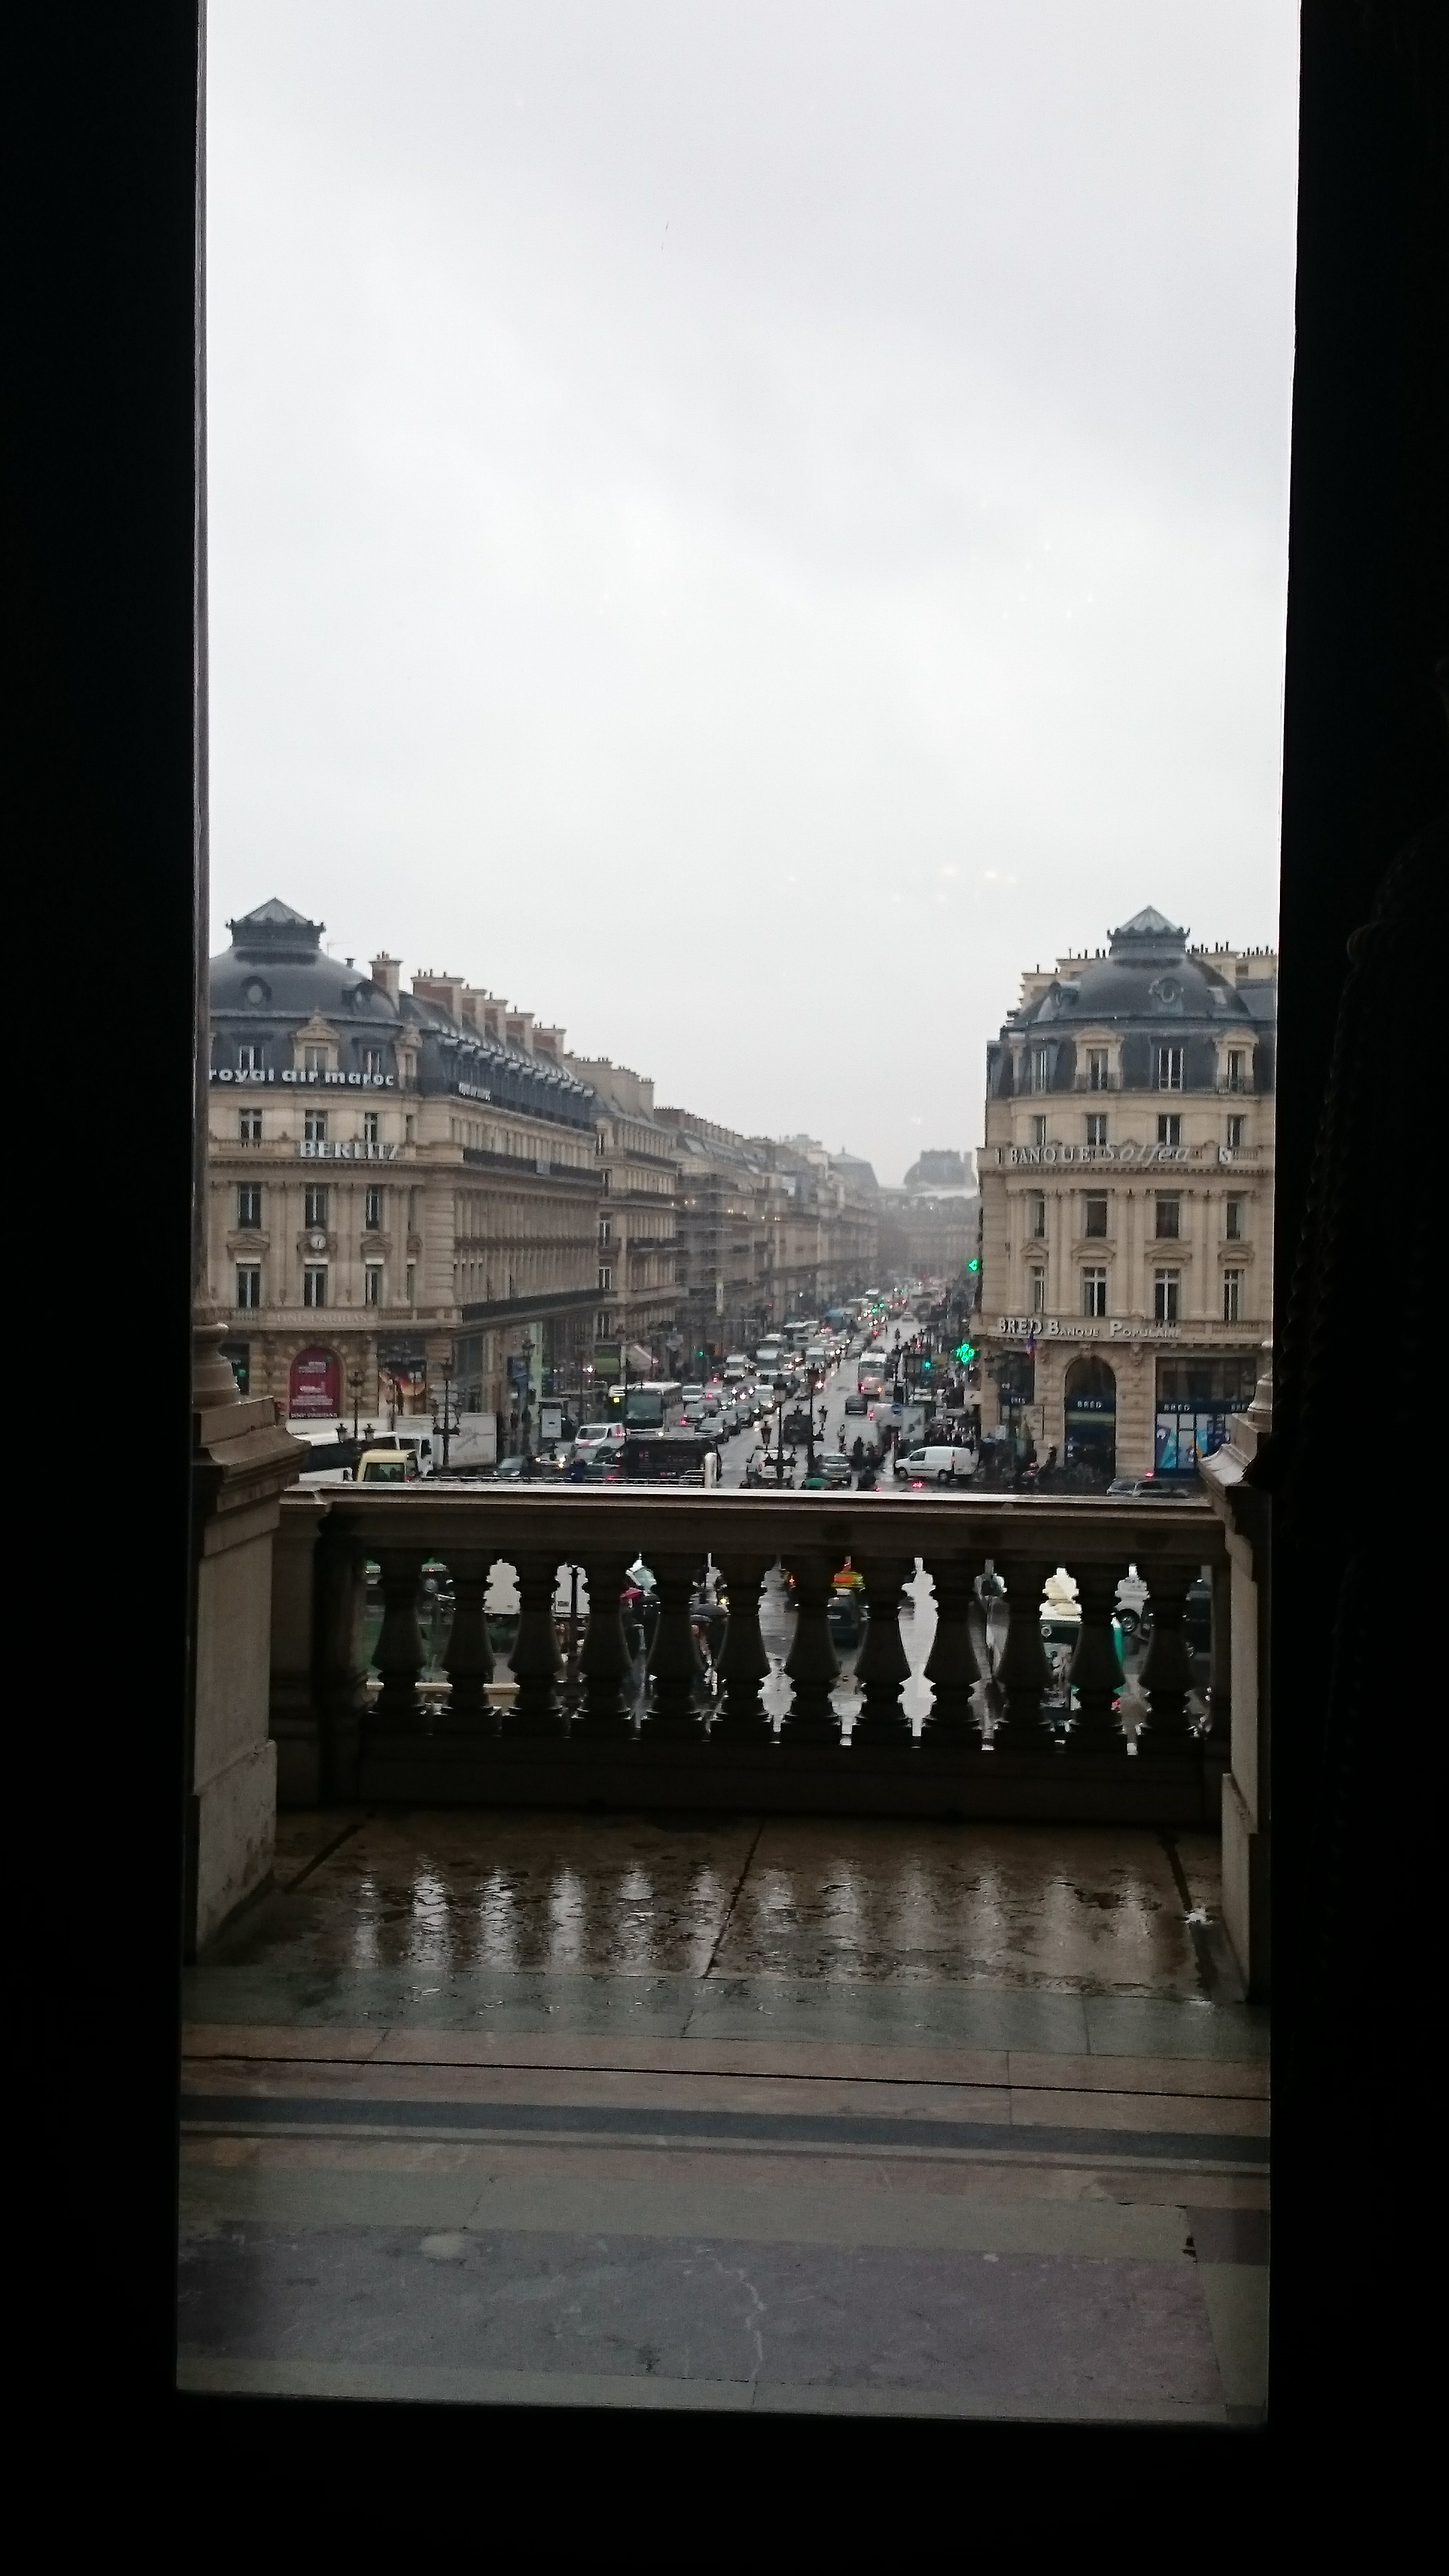 dsc 1058 - Una visita a la Opera de Paris (Palais Garnier)